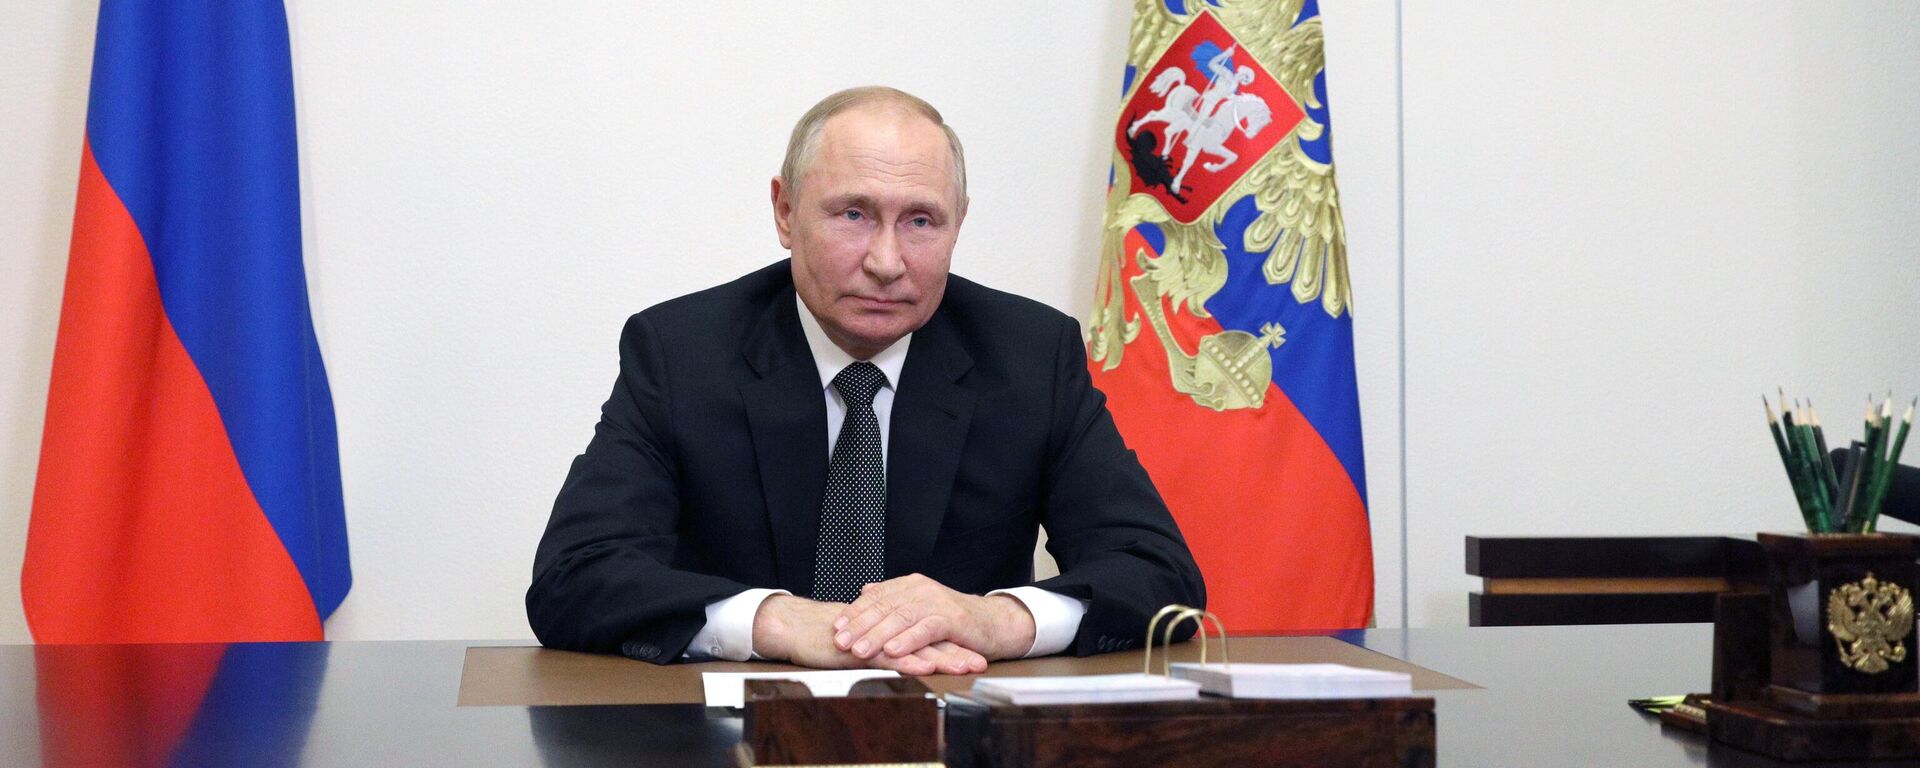 Presidente russo, Vladimir Putin, durante sua mensagem aos participantes da X Conferência de Segurança Internacional de Moscou, 16 de agosto de 2022 - Sputnik Brasil, 1920, 16.08.2022